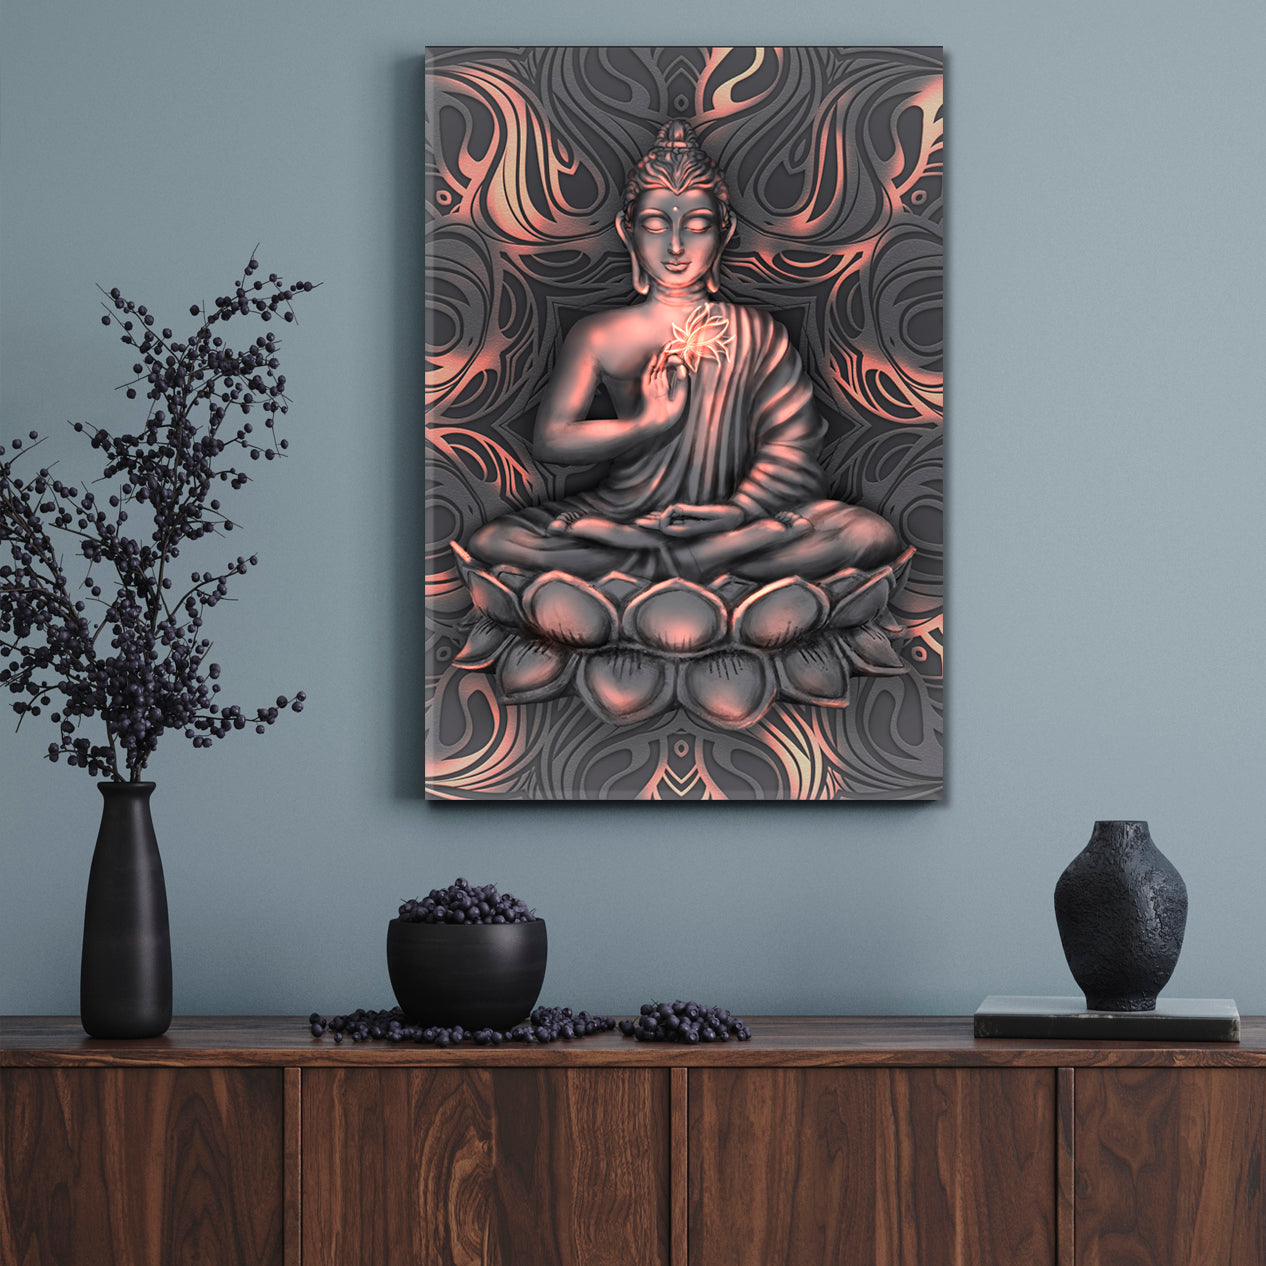 Shining Buddha Lotus Pose Stylized Mandala Painting Religious Modern Art Artesty   